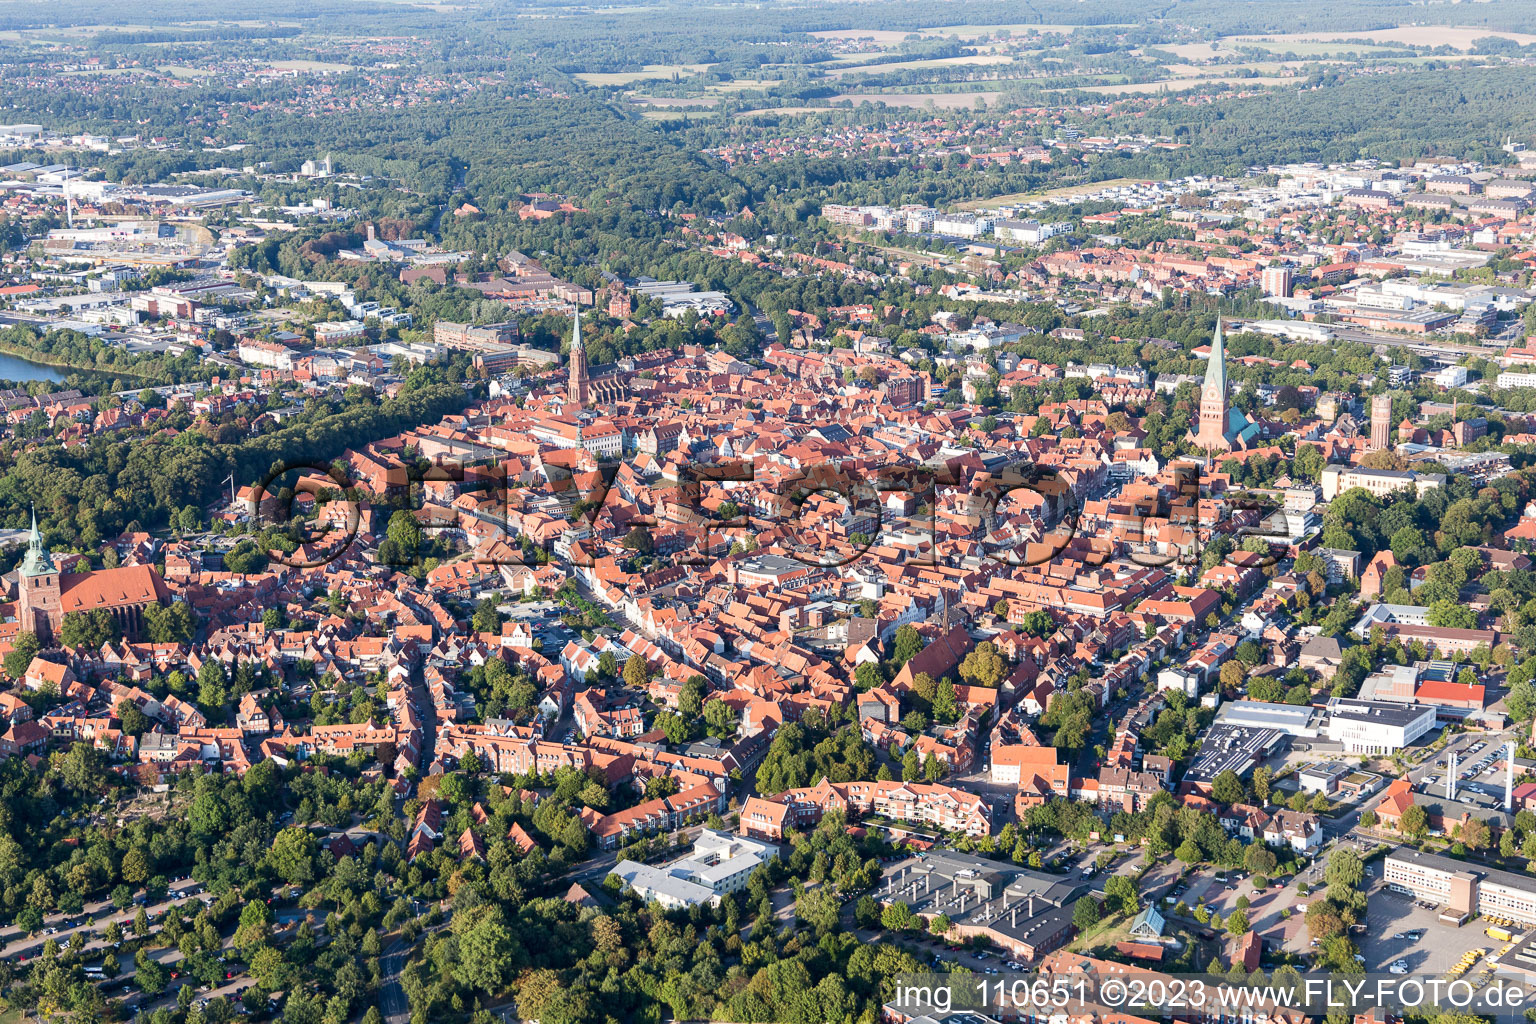 Altstadtbereich und Innenstadtzentrum in Lüneburg im Bundesland Niedersachsen, Deutschland aus der Luft betrachtet